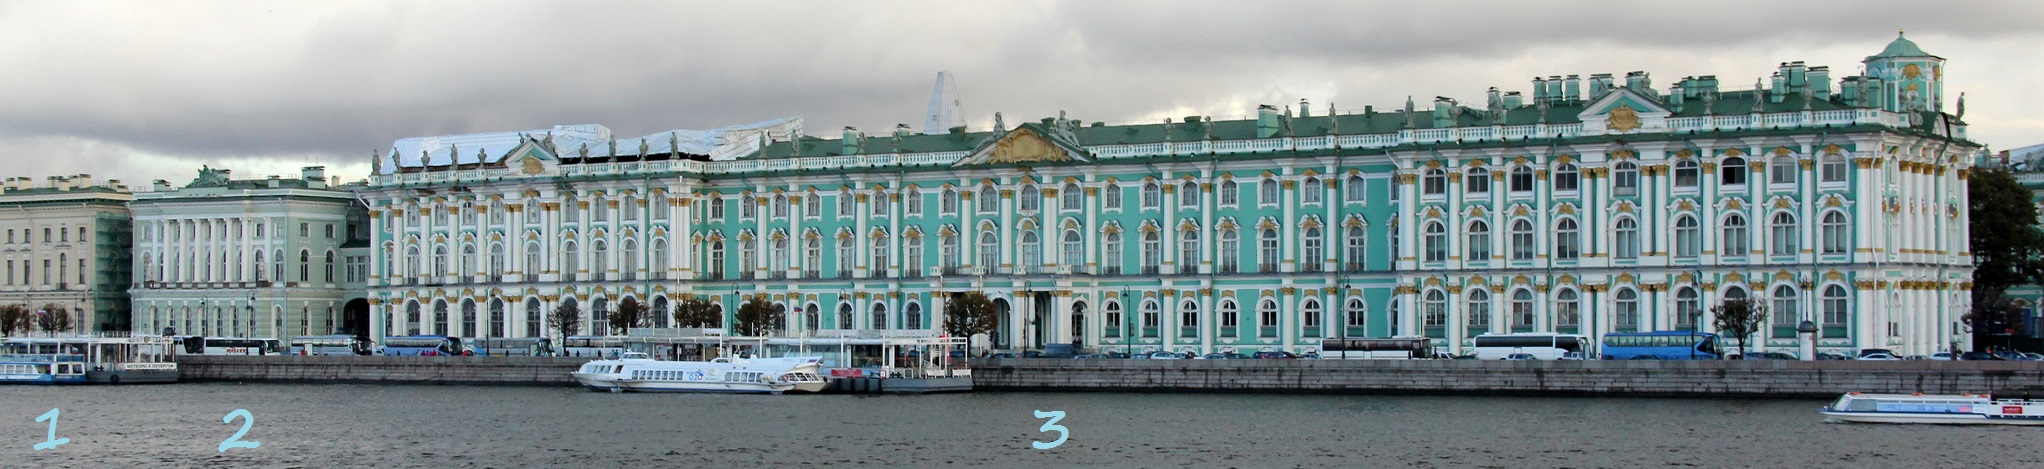 Anitskovin palatsi